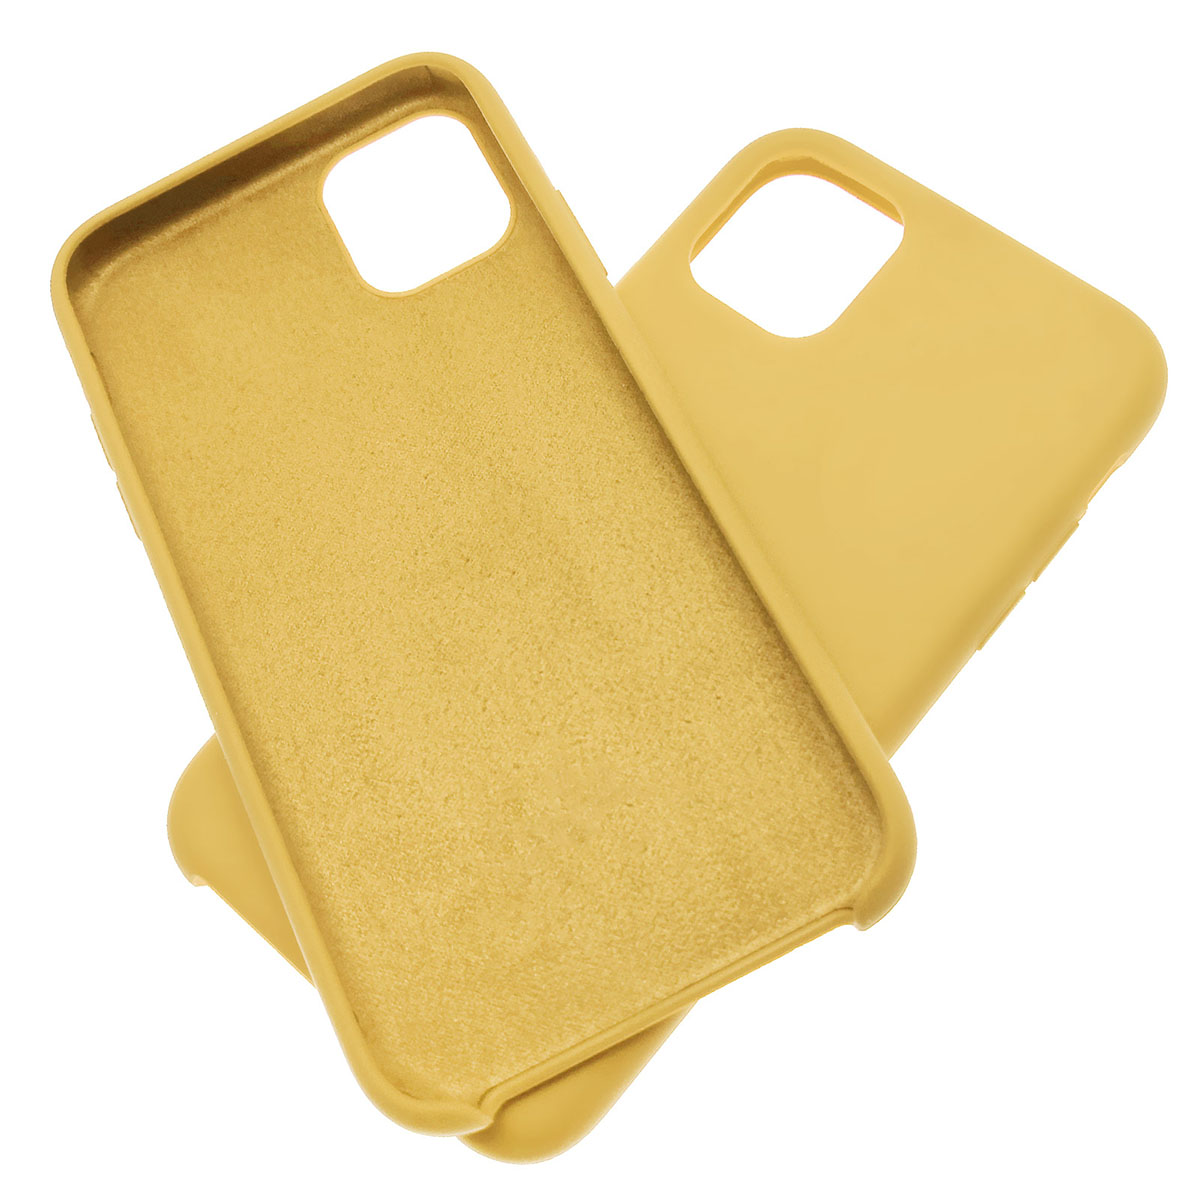 Чехол накладка Silicon Case для APPLE iPhone 11 Pro, силикон, бархат, цвет канареечный желтый.